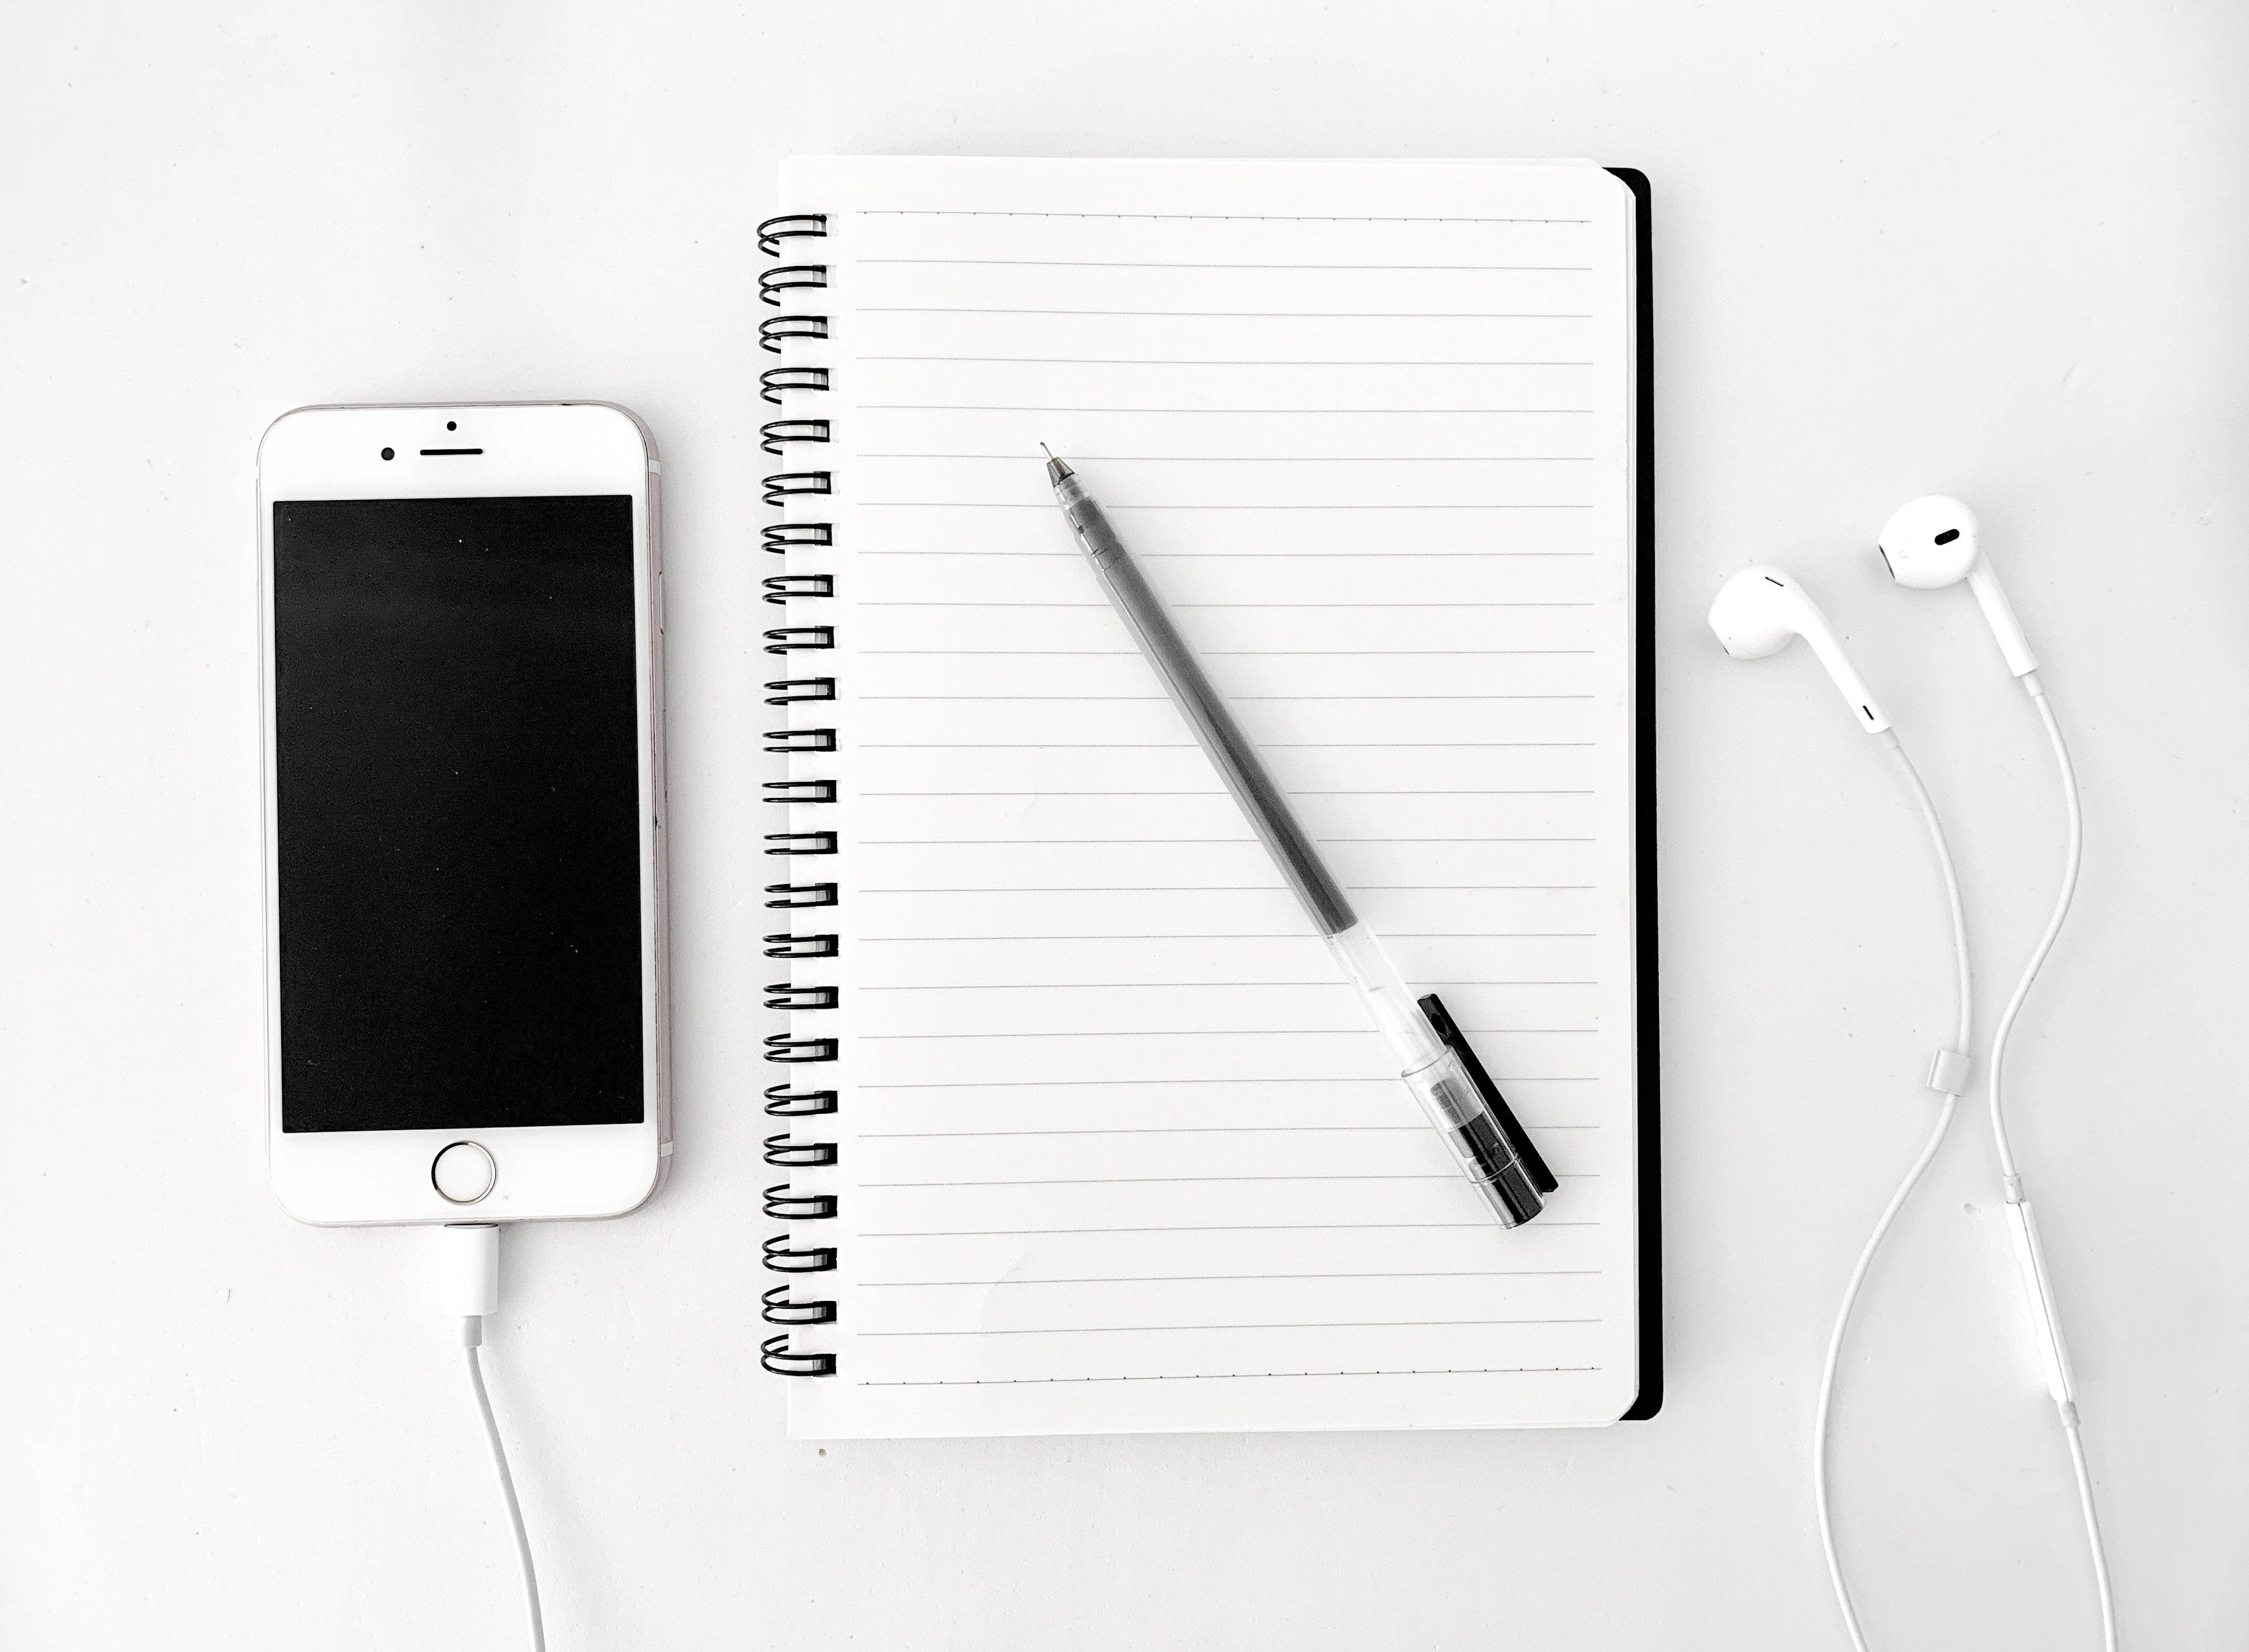 iPhone om naar de gratis breathworksessie te luisteren met notitieboekje om inzichten op te schrijven